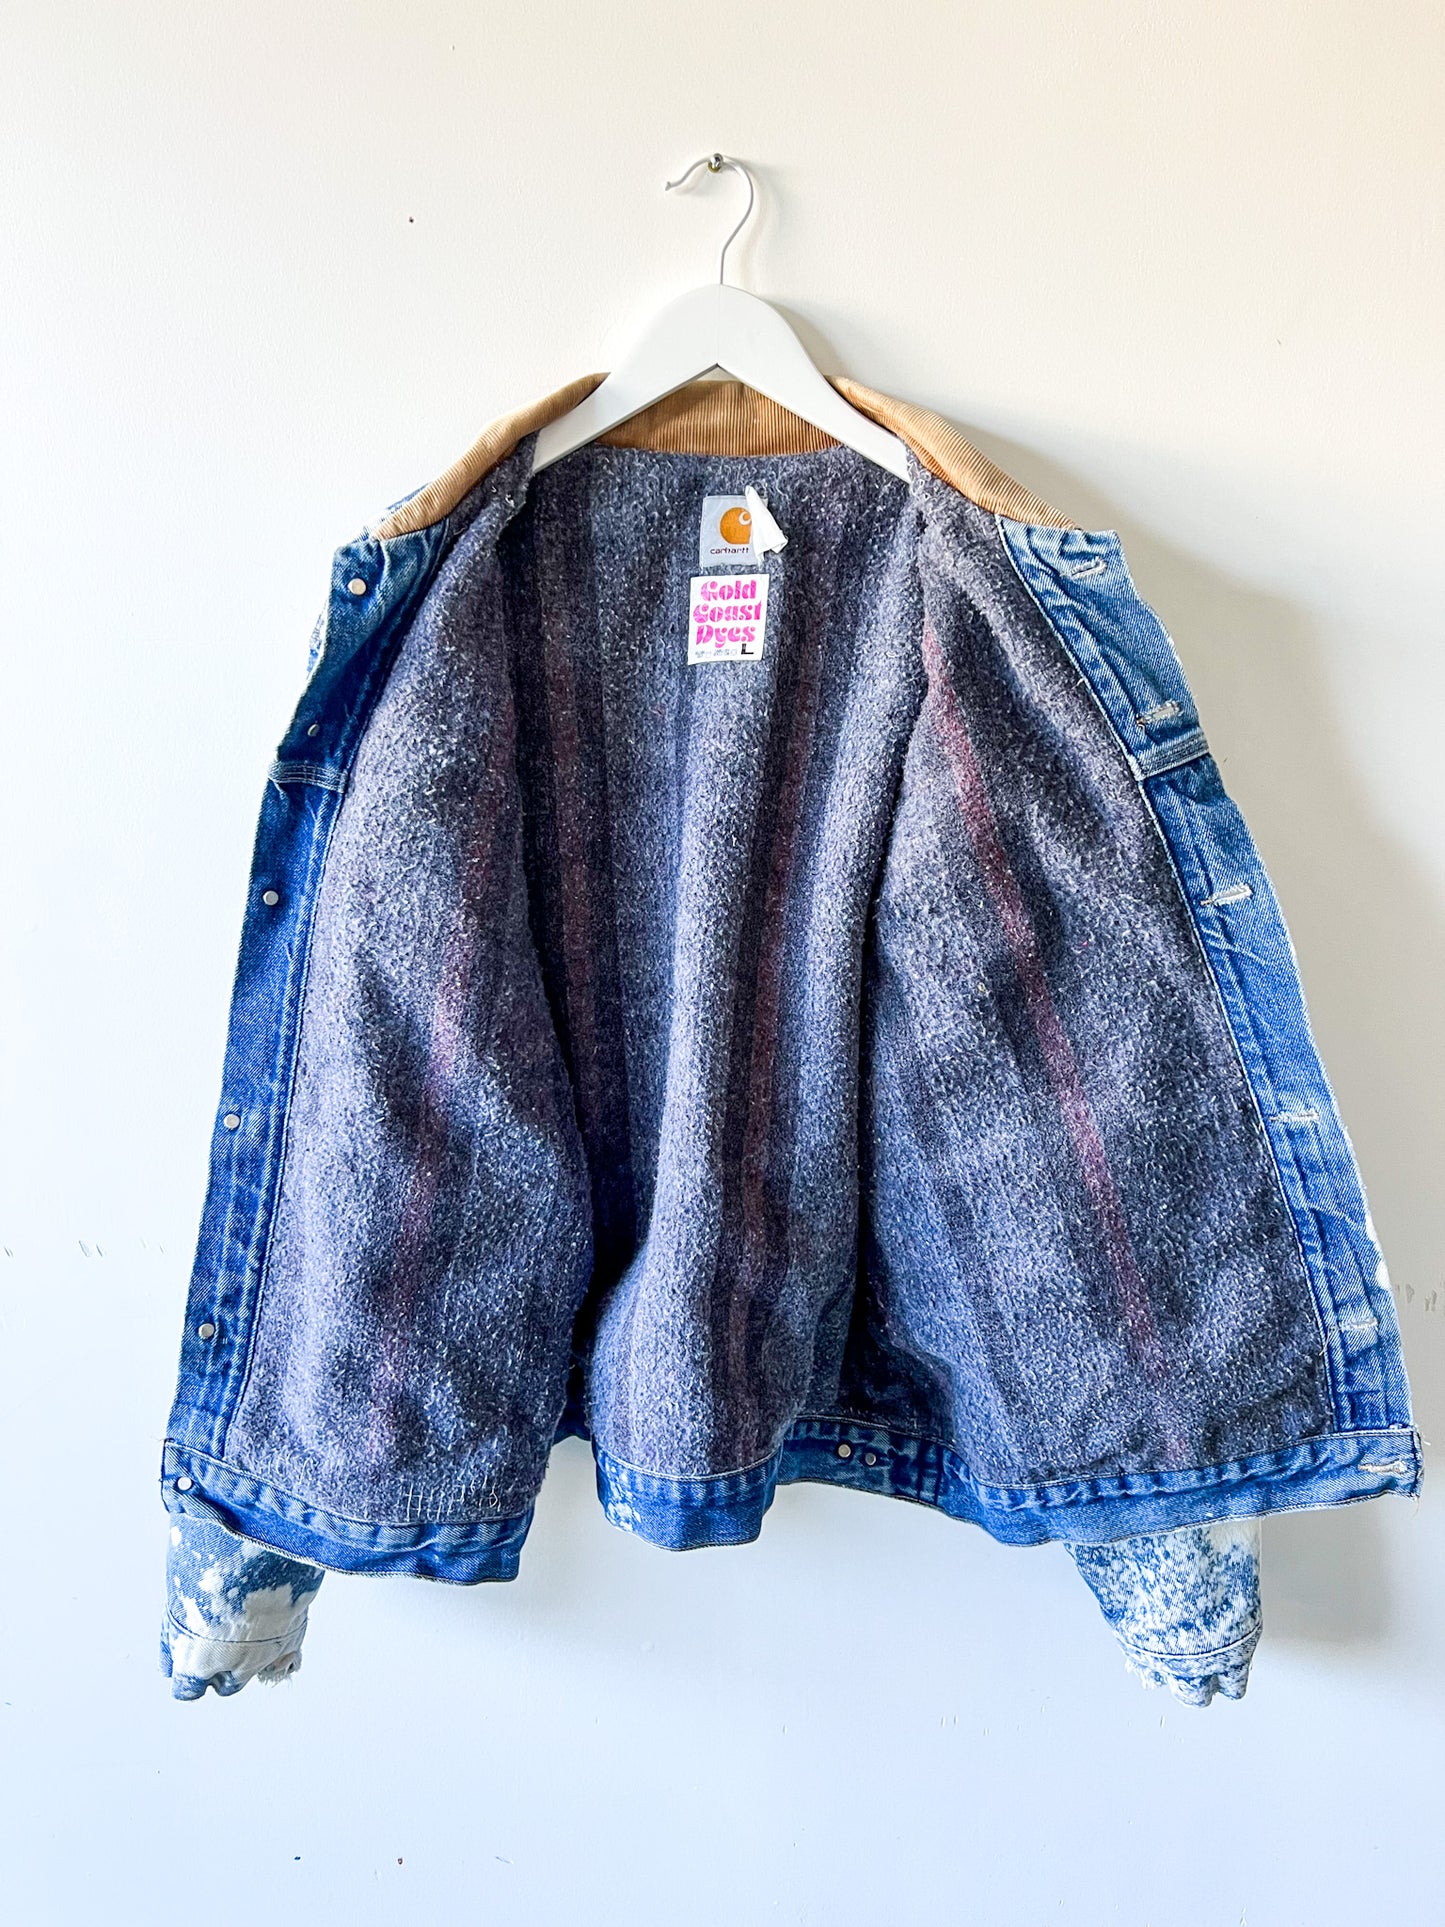 IDAHO - Vintage 90s Carhartt Acid Washed Blanket Lined Western Jacket - Denim, White - Unisex Large